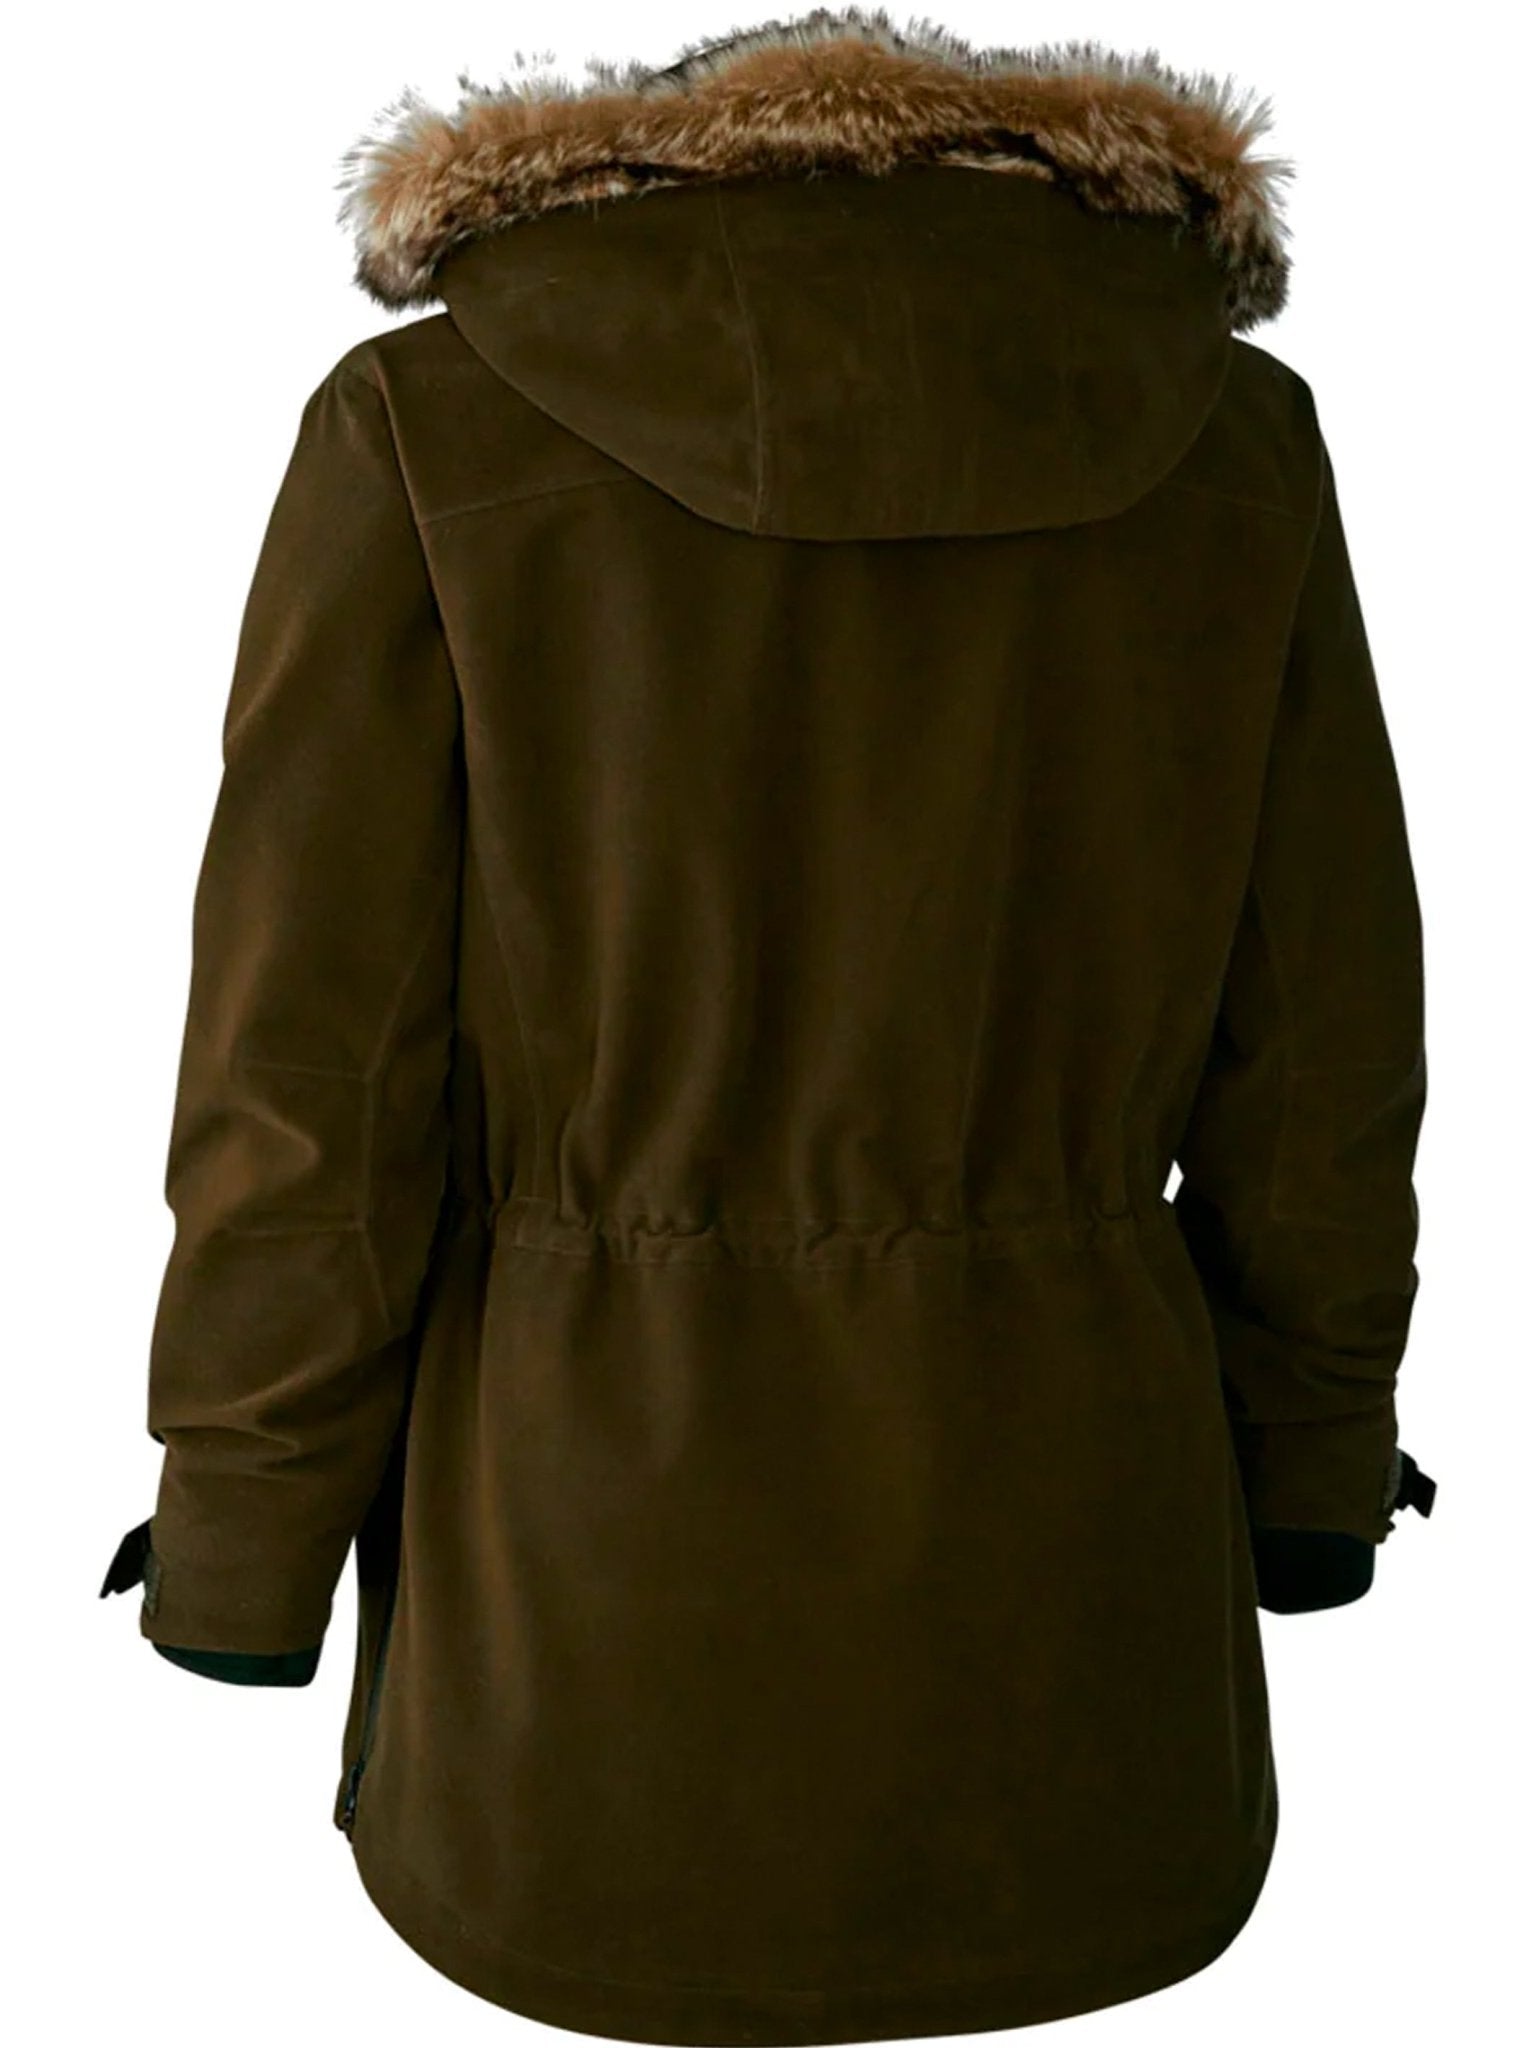 4elementsclothingDeerhunterDeerhunter - Ladies Waterproof Jacket / coat / Smock - Lady Gabby smockOuterwear5004-391-36